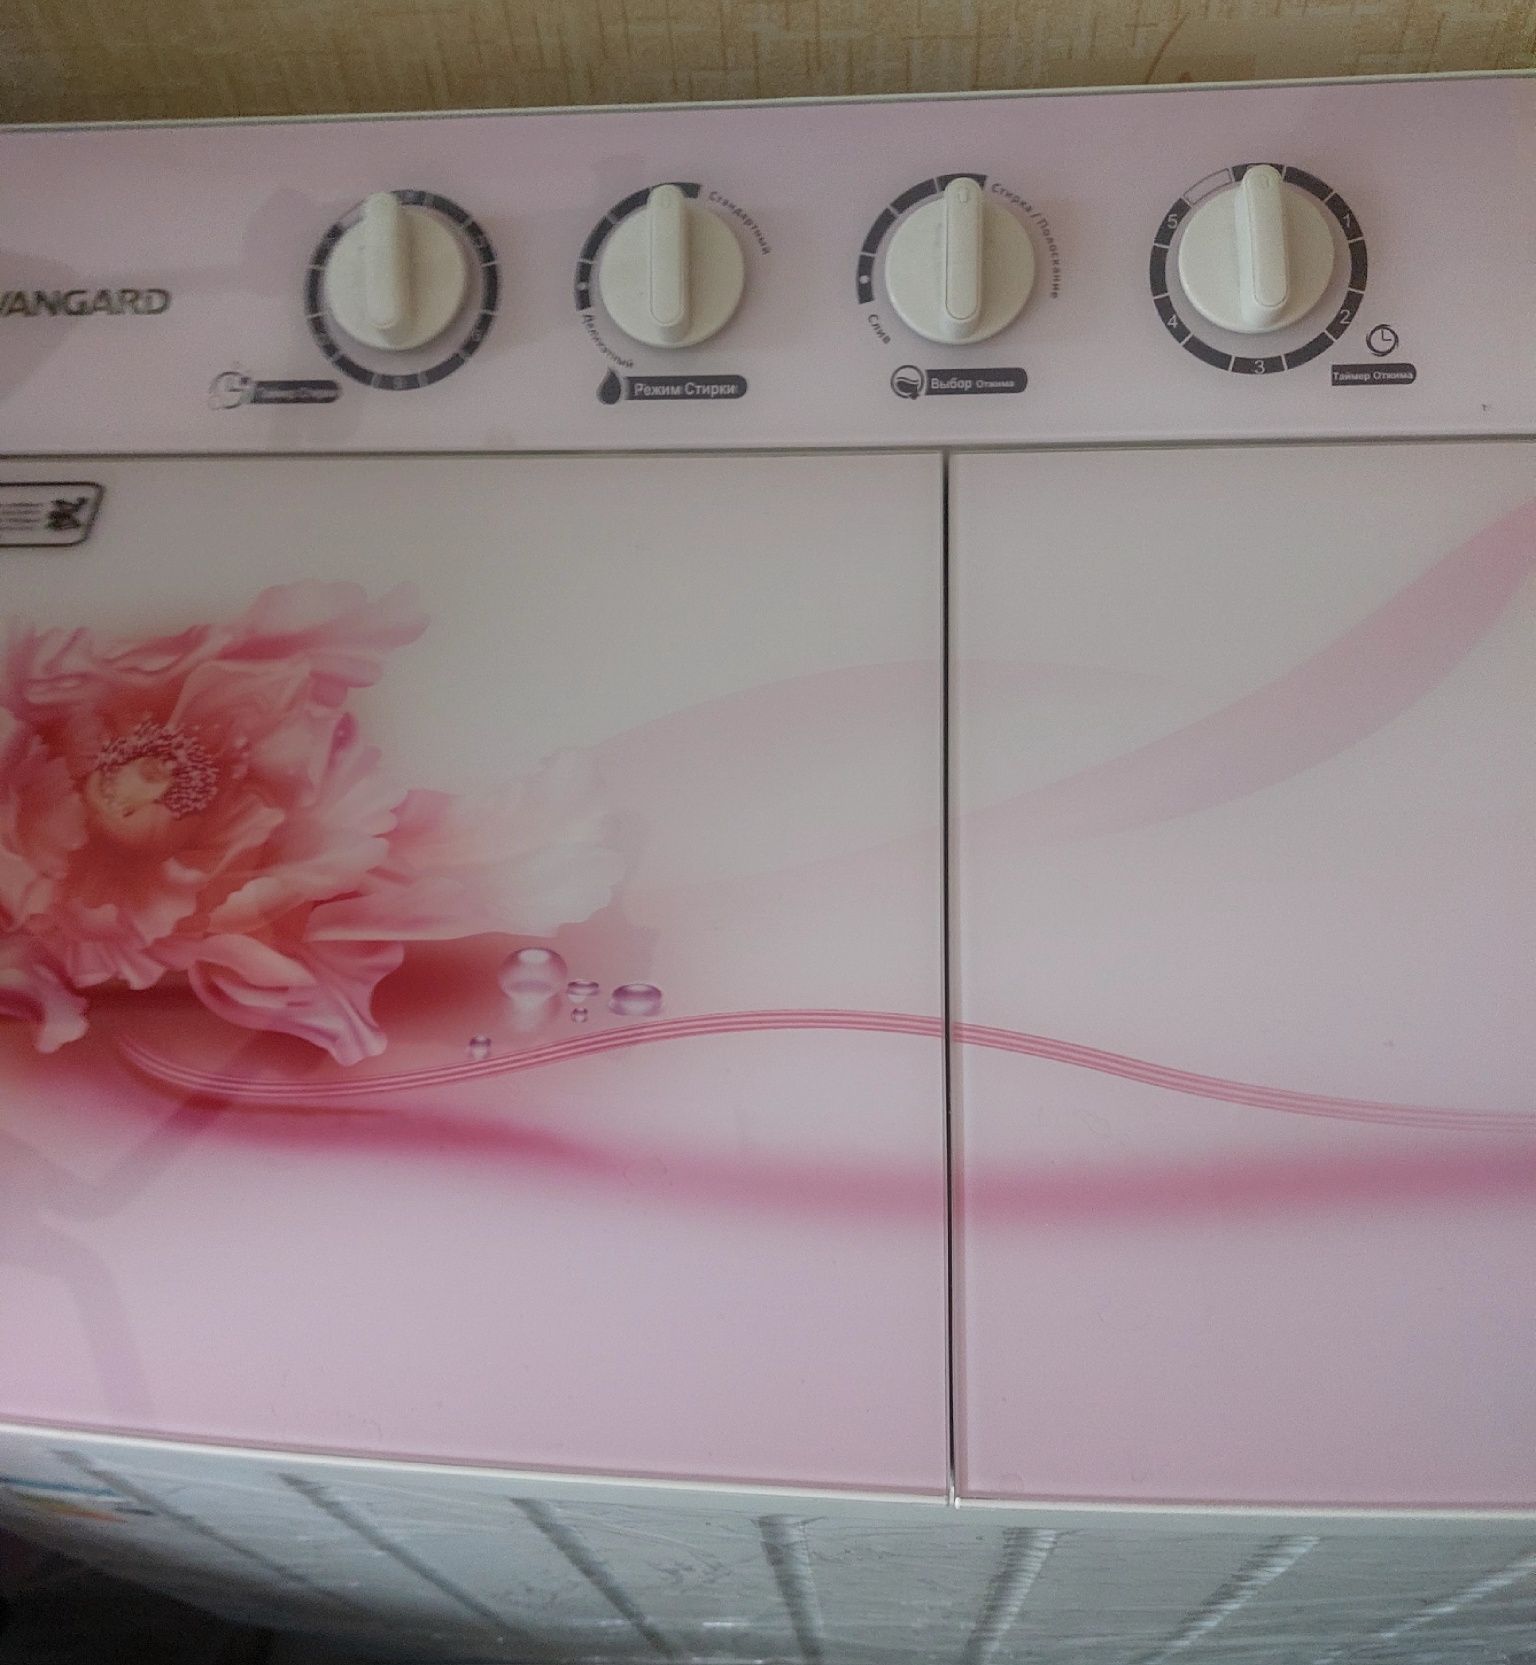 Продажа стиральной машинки Avangard .9kg большая удобная